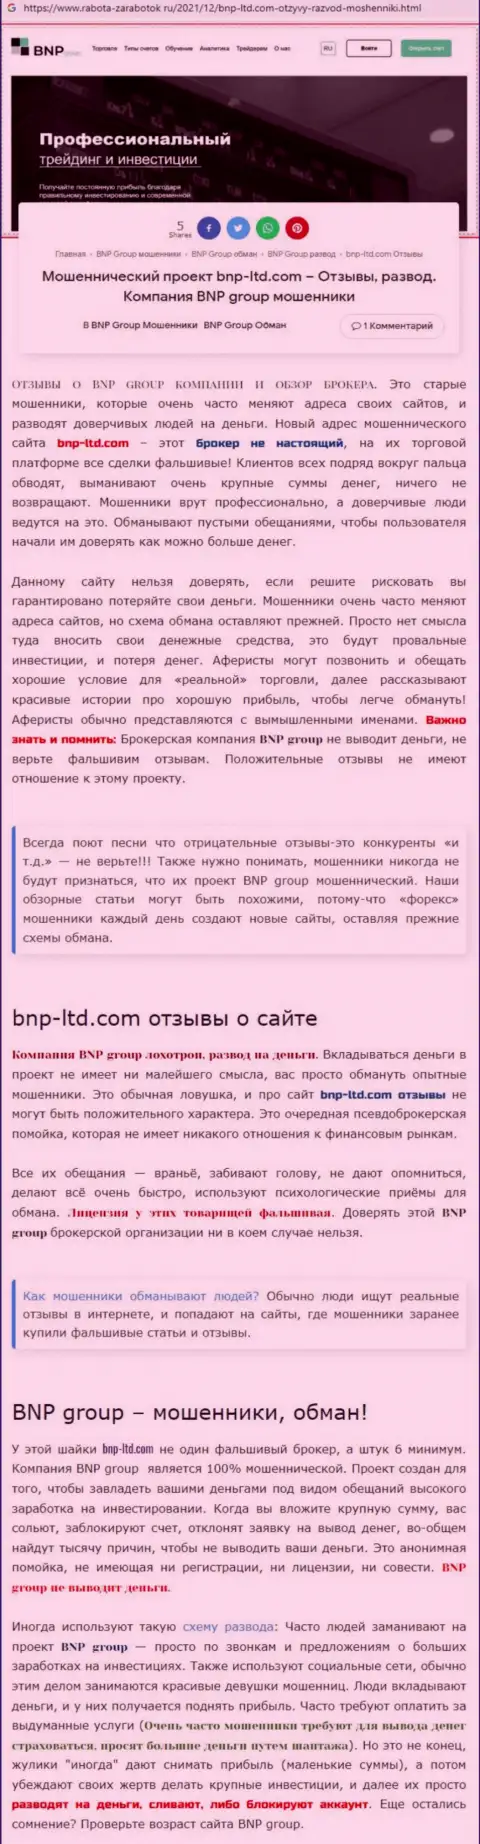 О перечисленных в контору BNPGroup средствах можете забыть, присваивают все до последнего рубля (обзор противозаконных действий)